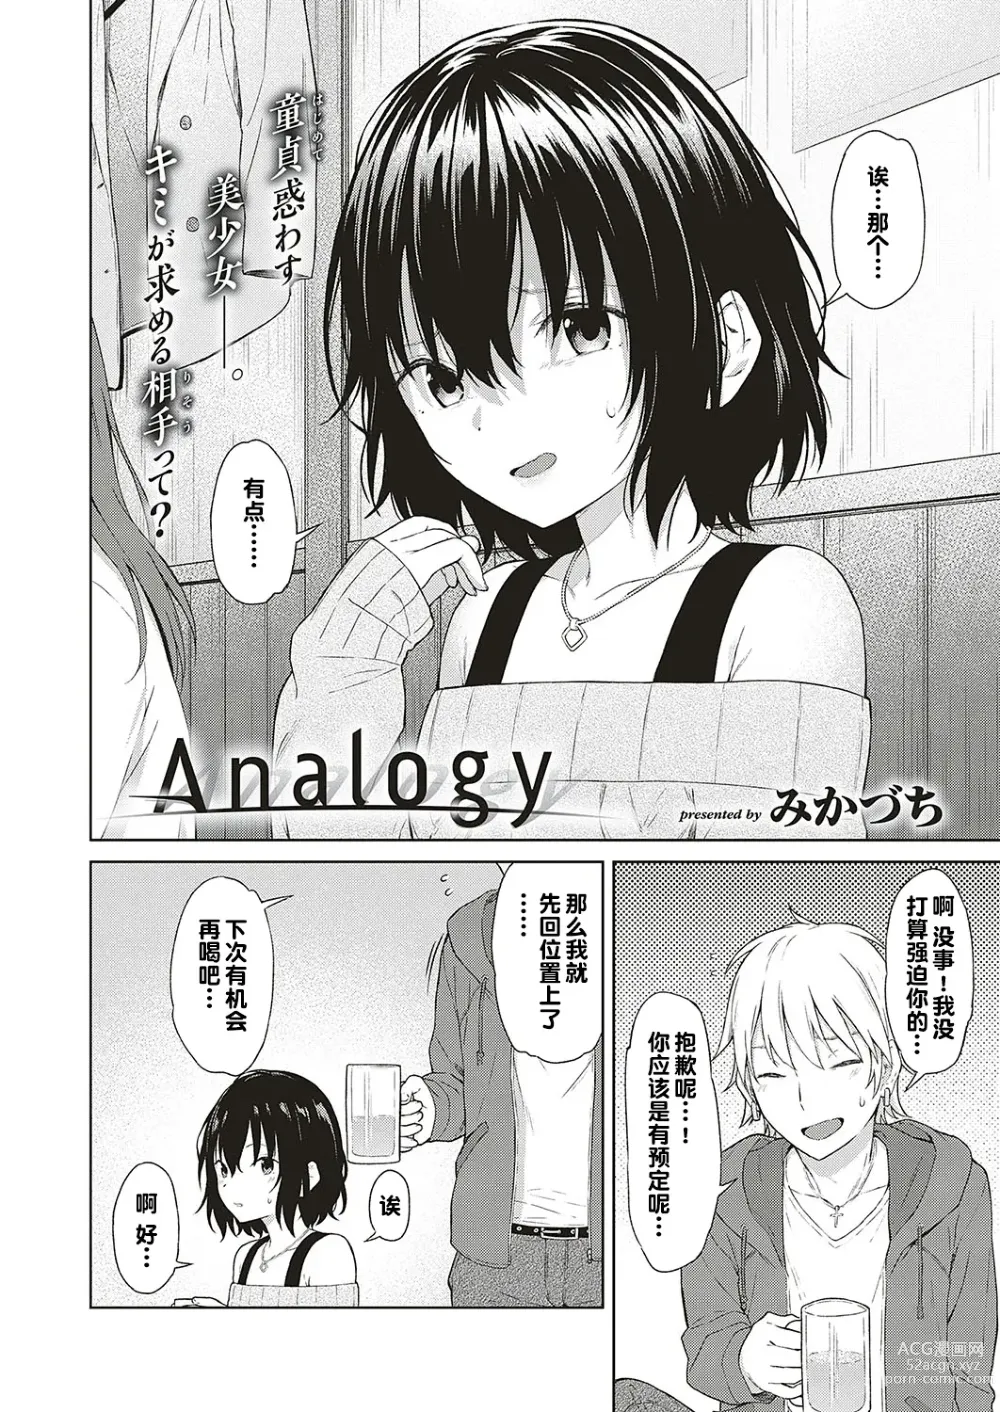 Page 2 of manga Analogy